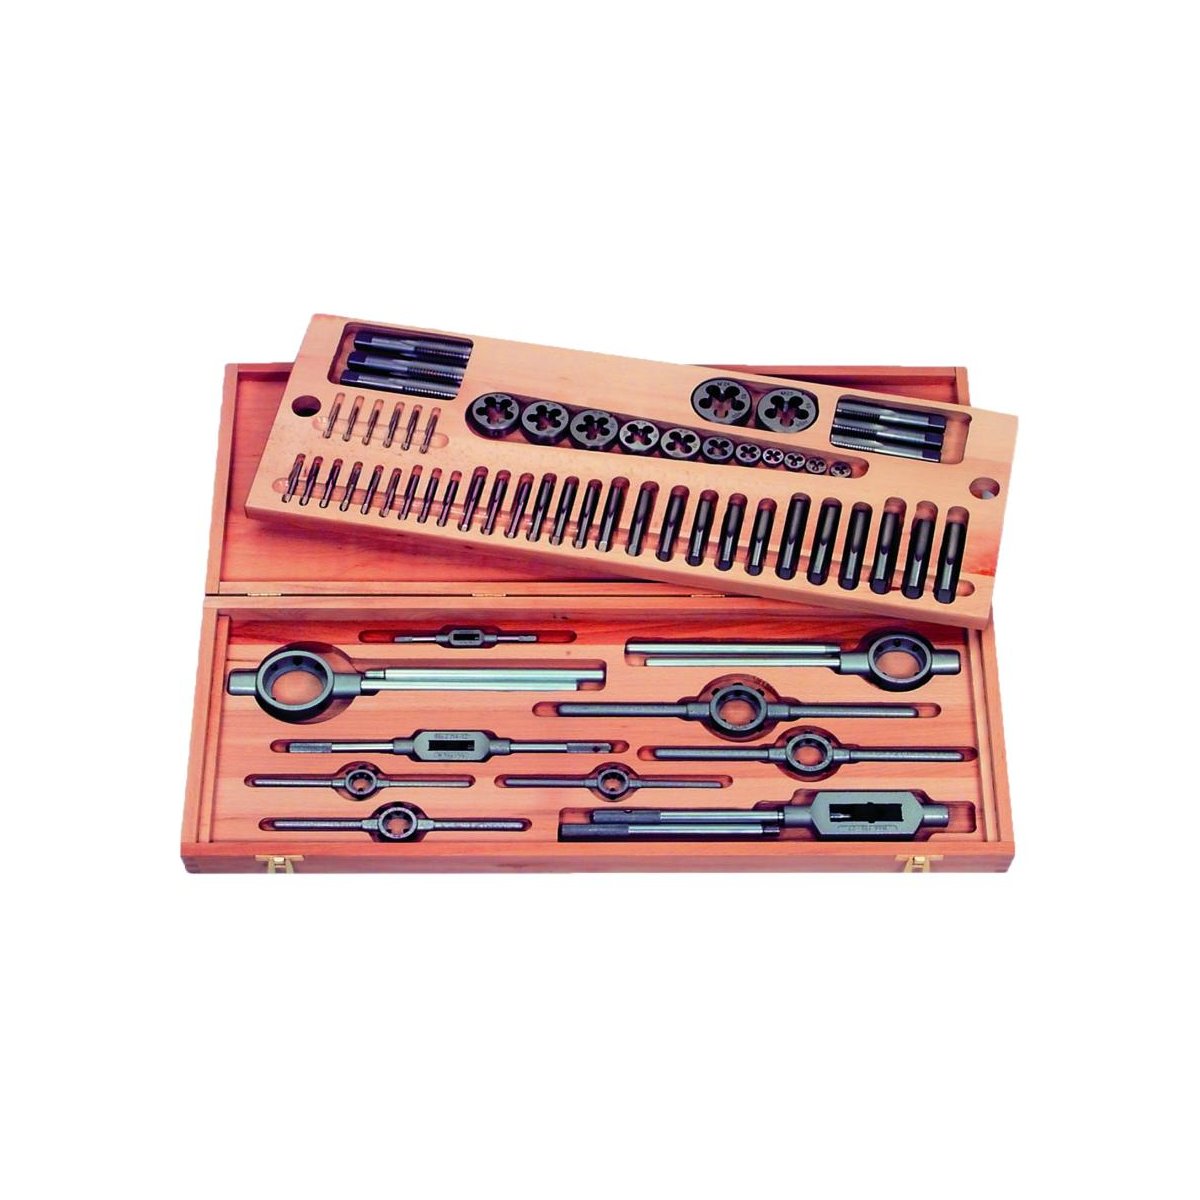 Набор резьбонарезного инструмента No 6011 HSS, 35 пр., BSW 1/4 - 3/4, деревянный кейс